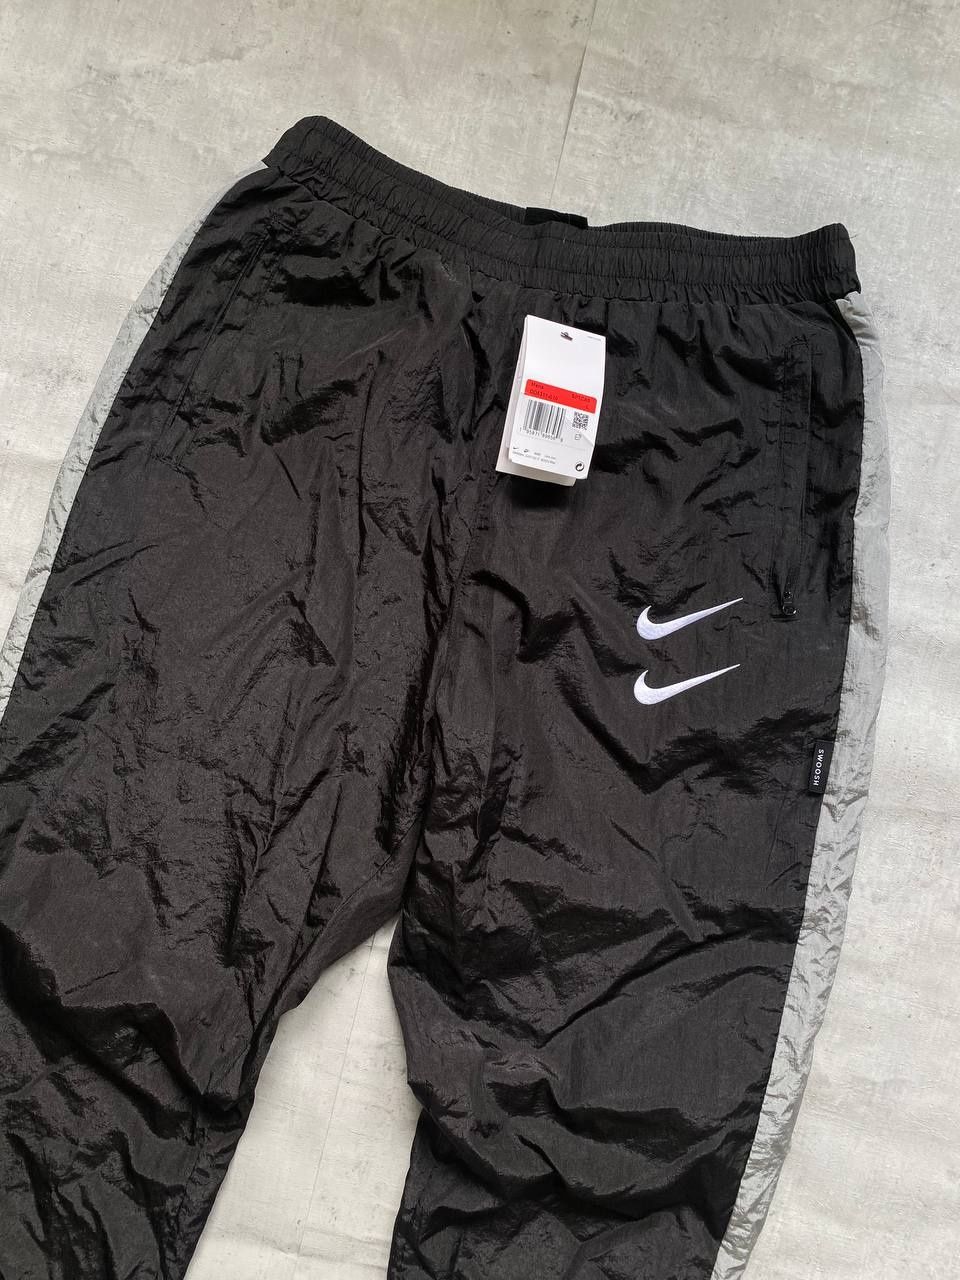 Спортивні штани Nike Swoosh

Повністю нові

Розмір: по факту М

Заміри